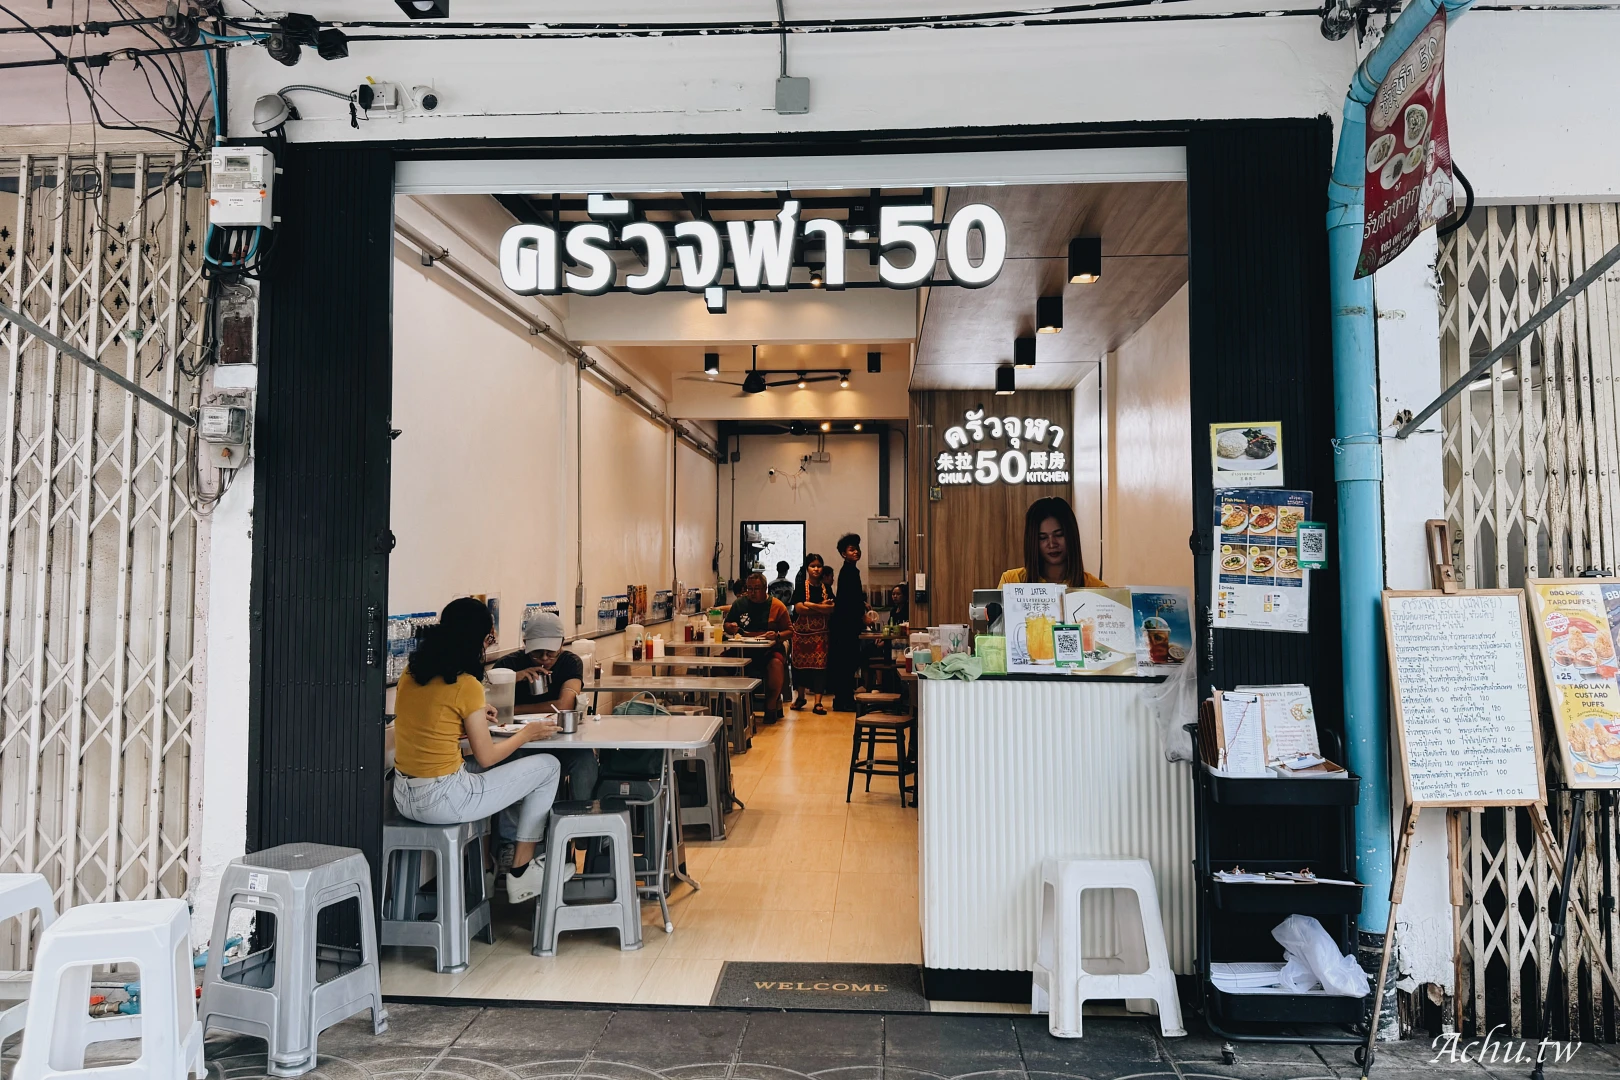 【曼谷美食】朱拉50巷廚房 Chula 50 Kitchen，平價美食好吃的滑蛋蟹肉炒飯！(菜單) @阿朱的日常